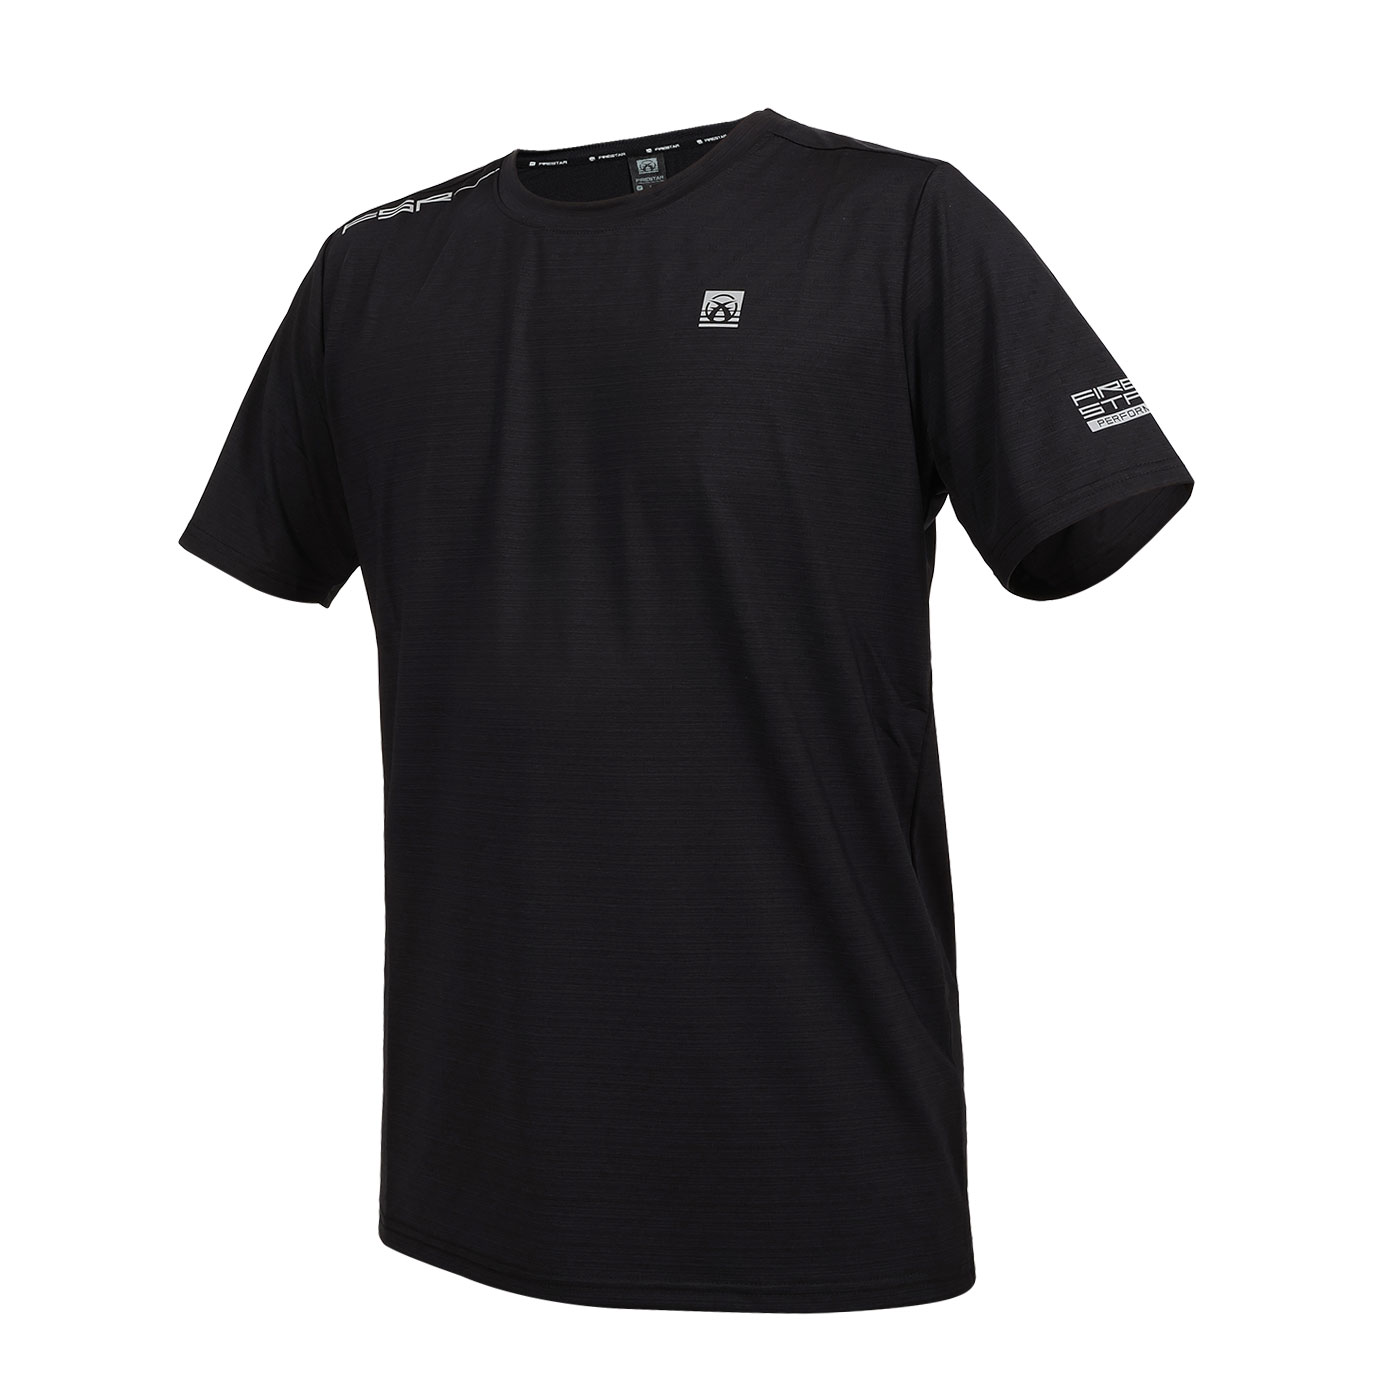 FIRESTAR 男款冰感圓領短袖T恤  D4630-10 - 黑